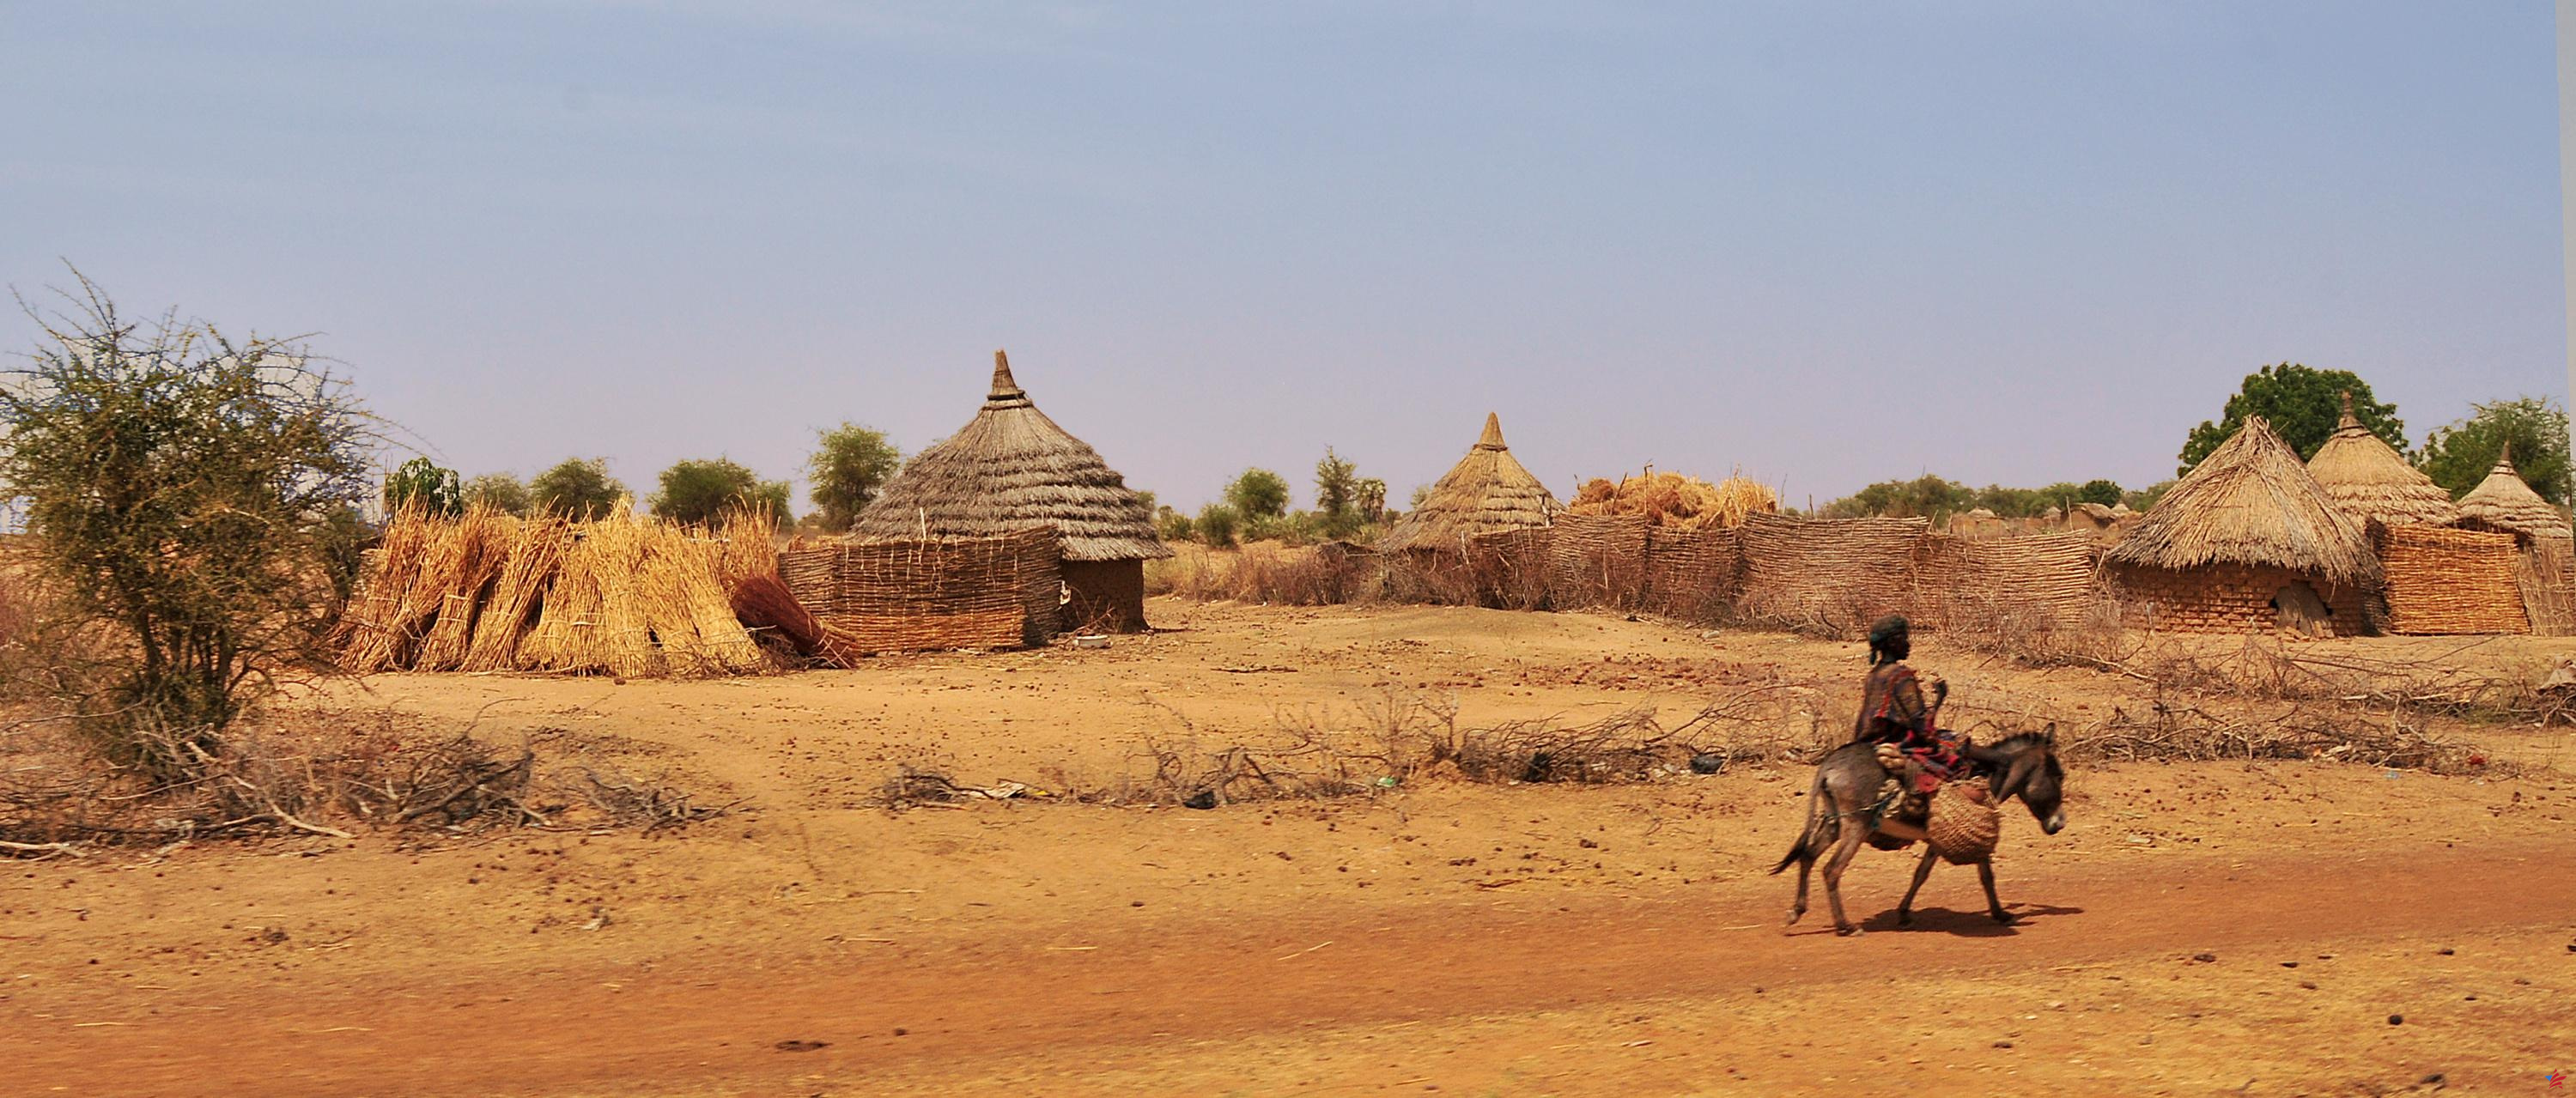 Sahel: la letal ola de calor provocada por el cambio climático “provocado por el hombre”